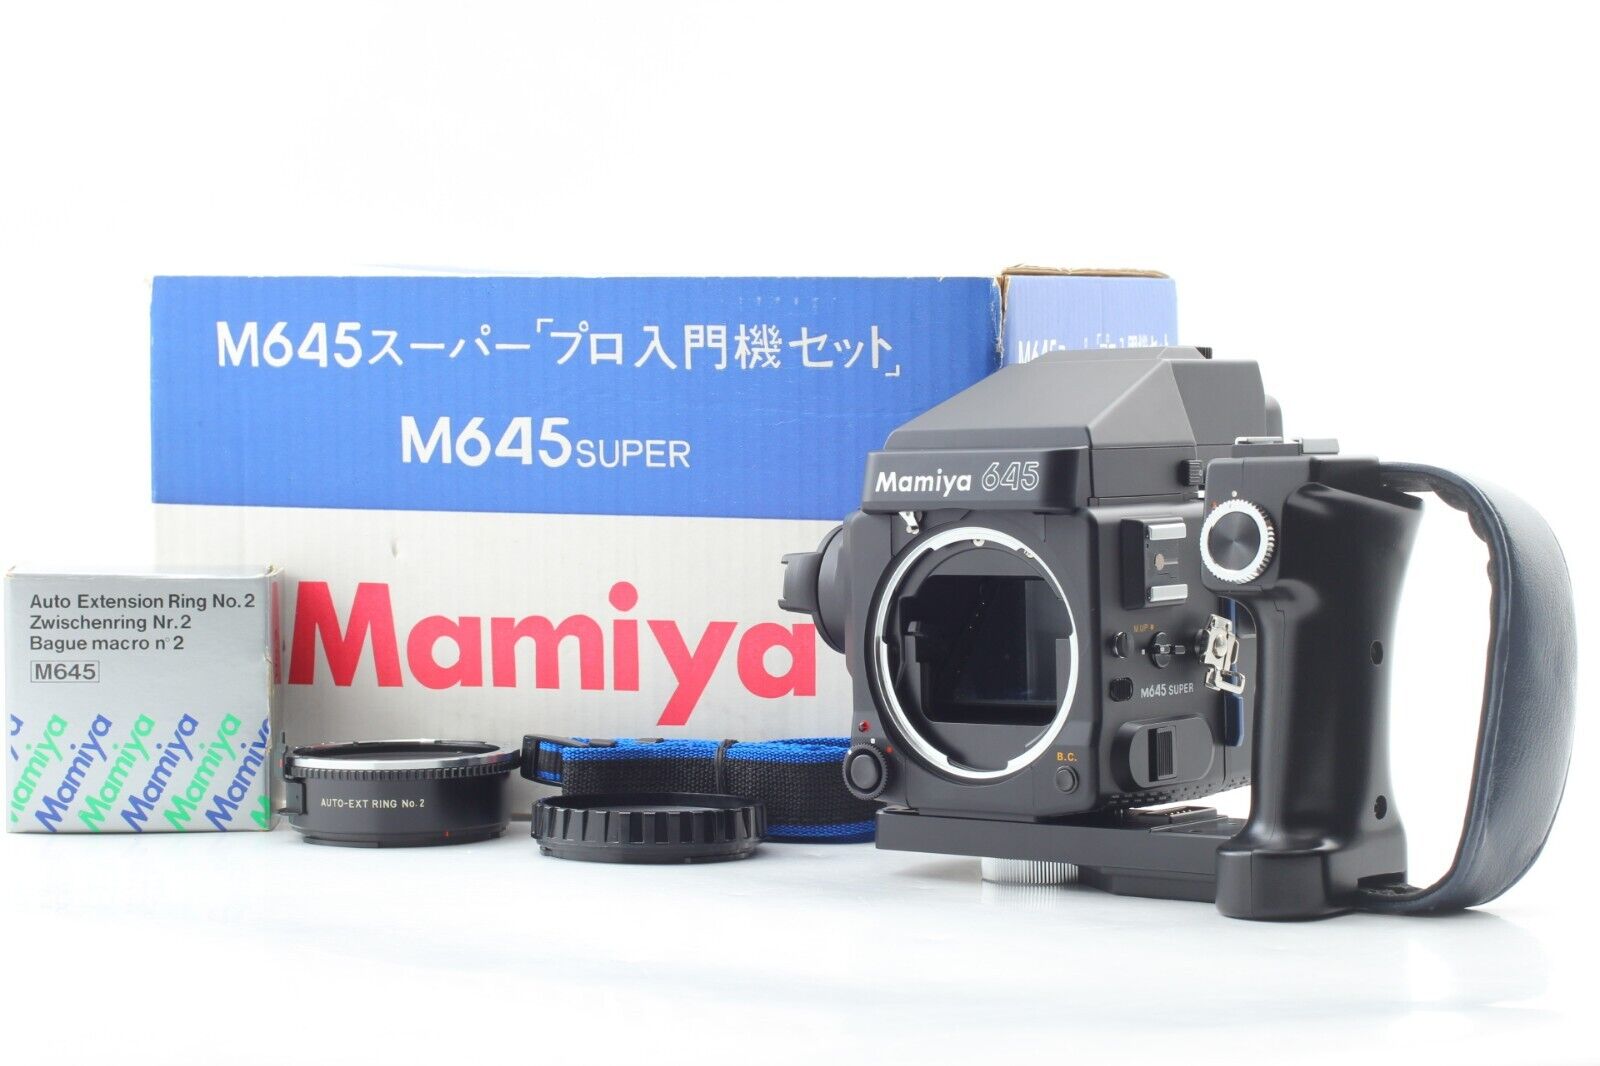 [UNUSED in Box] Mamiya M645 Super Body Grip AE Film Camera 135 Film Back JAPAN